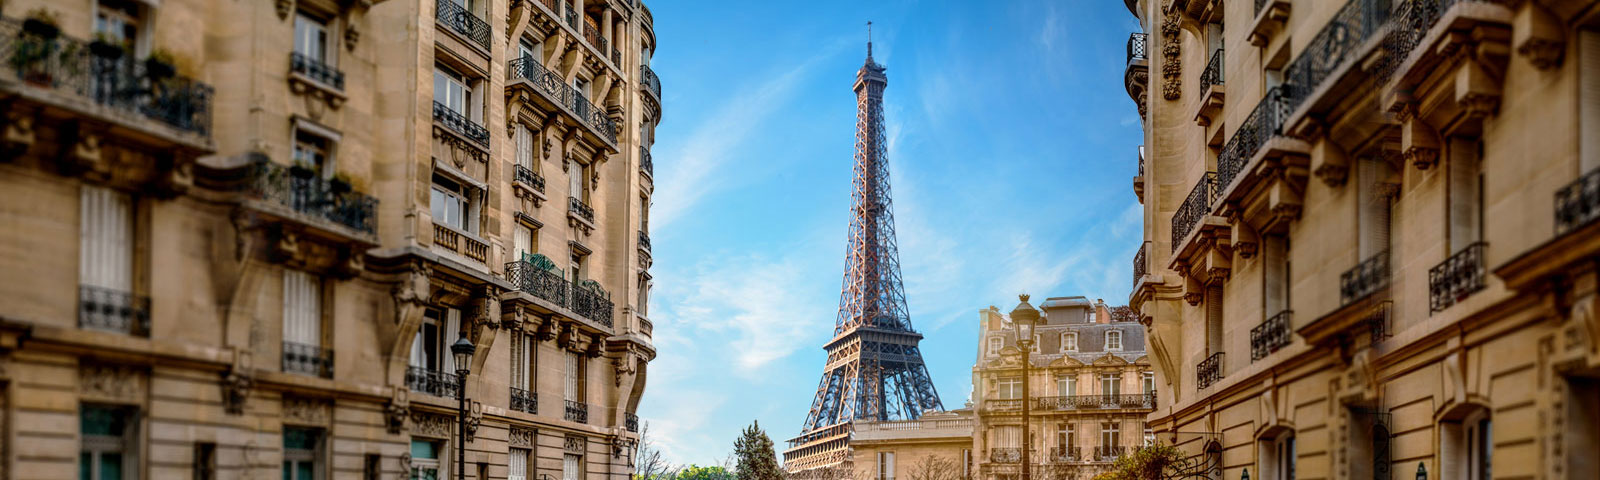 HOMY PARIS REAL ESTATE – A Licensed Real Estate & Property Management ...